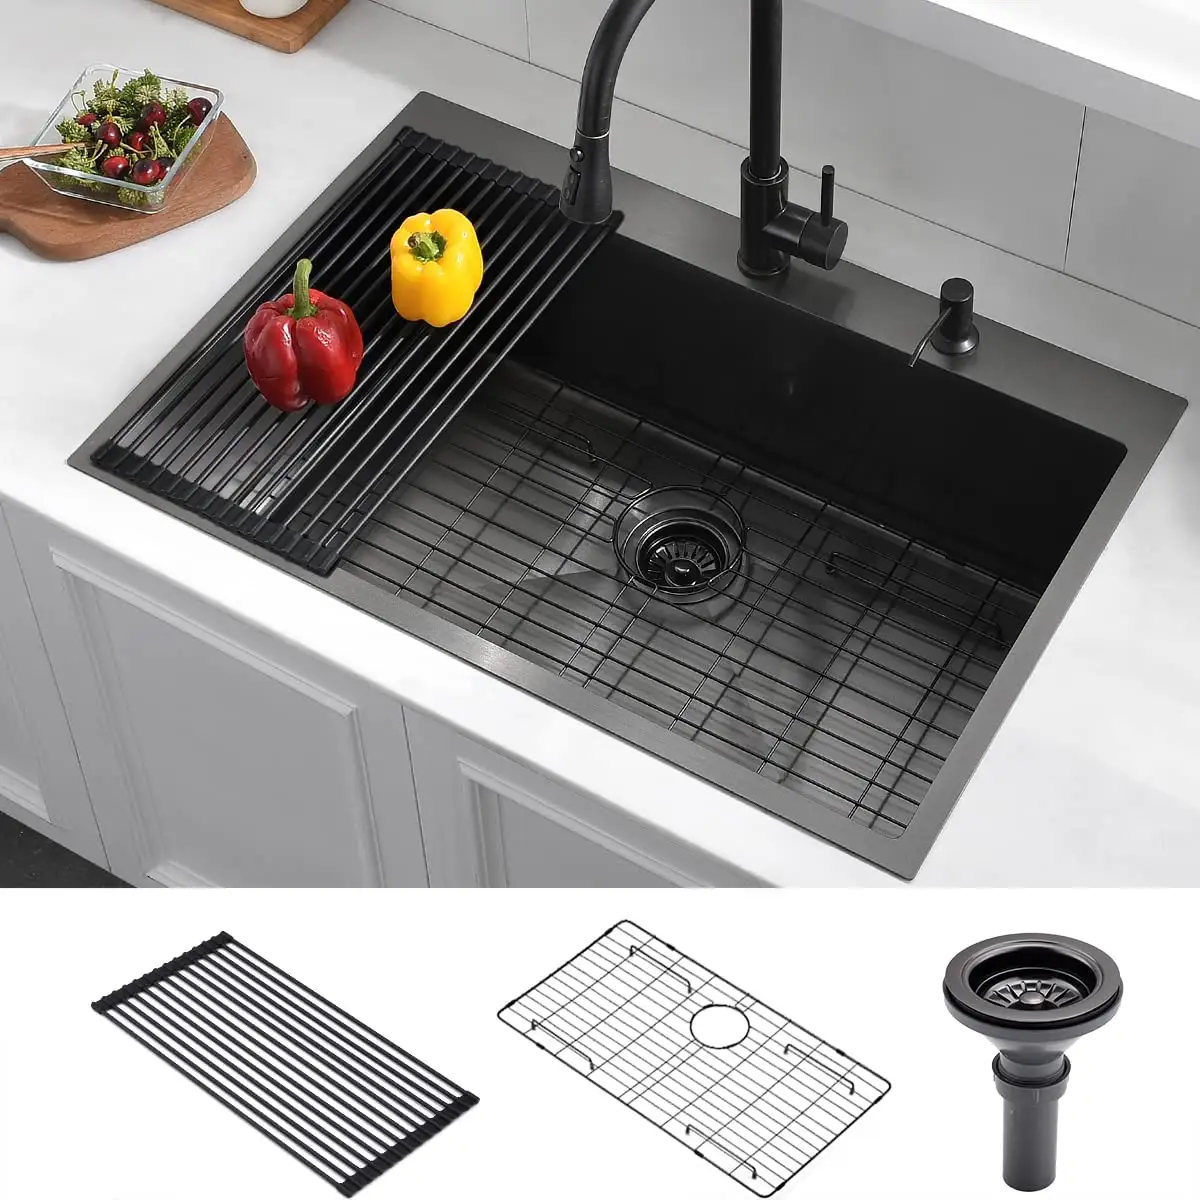 حوض مطبخ من الفولاذ المقاوم للصدأ متوفر باللون الأسود غير اللامع من الجهات المصنعة لحوض المطبخ